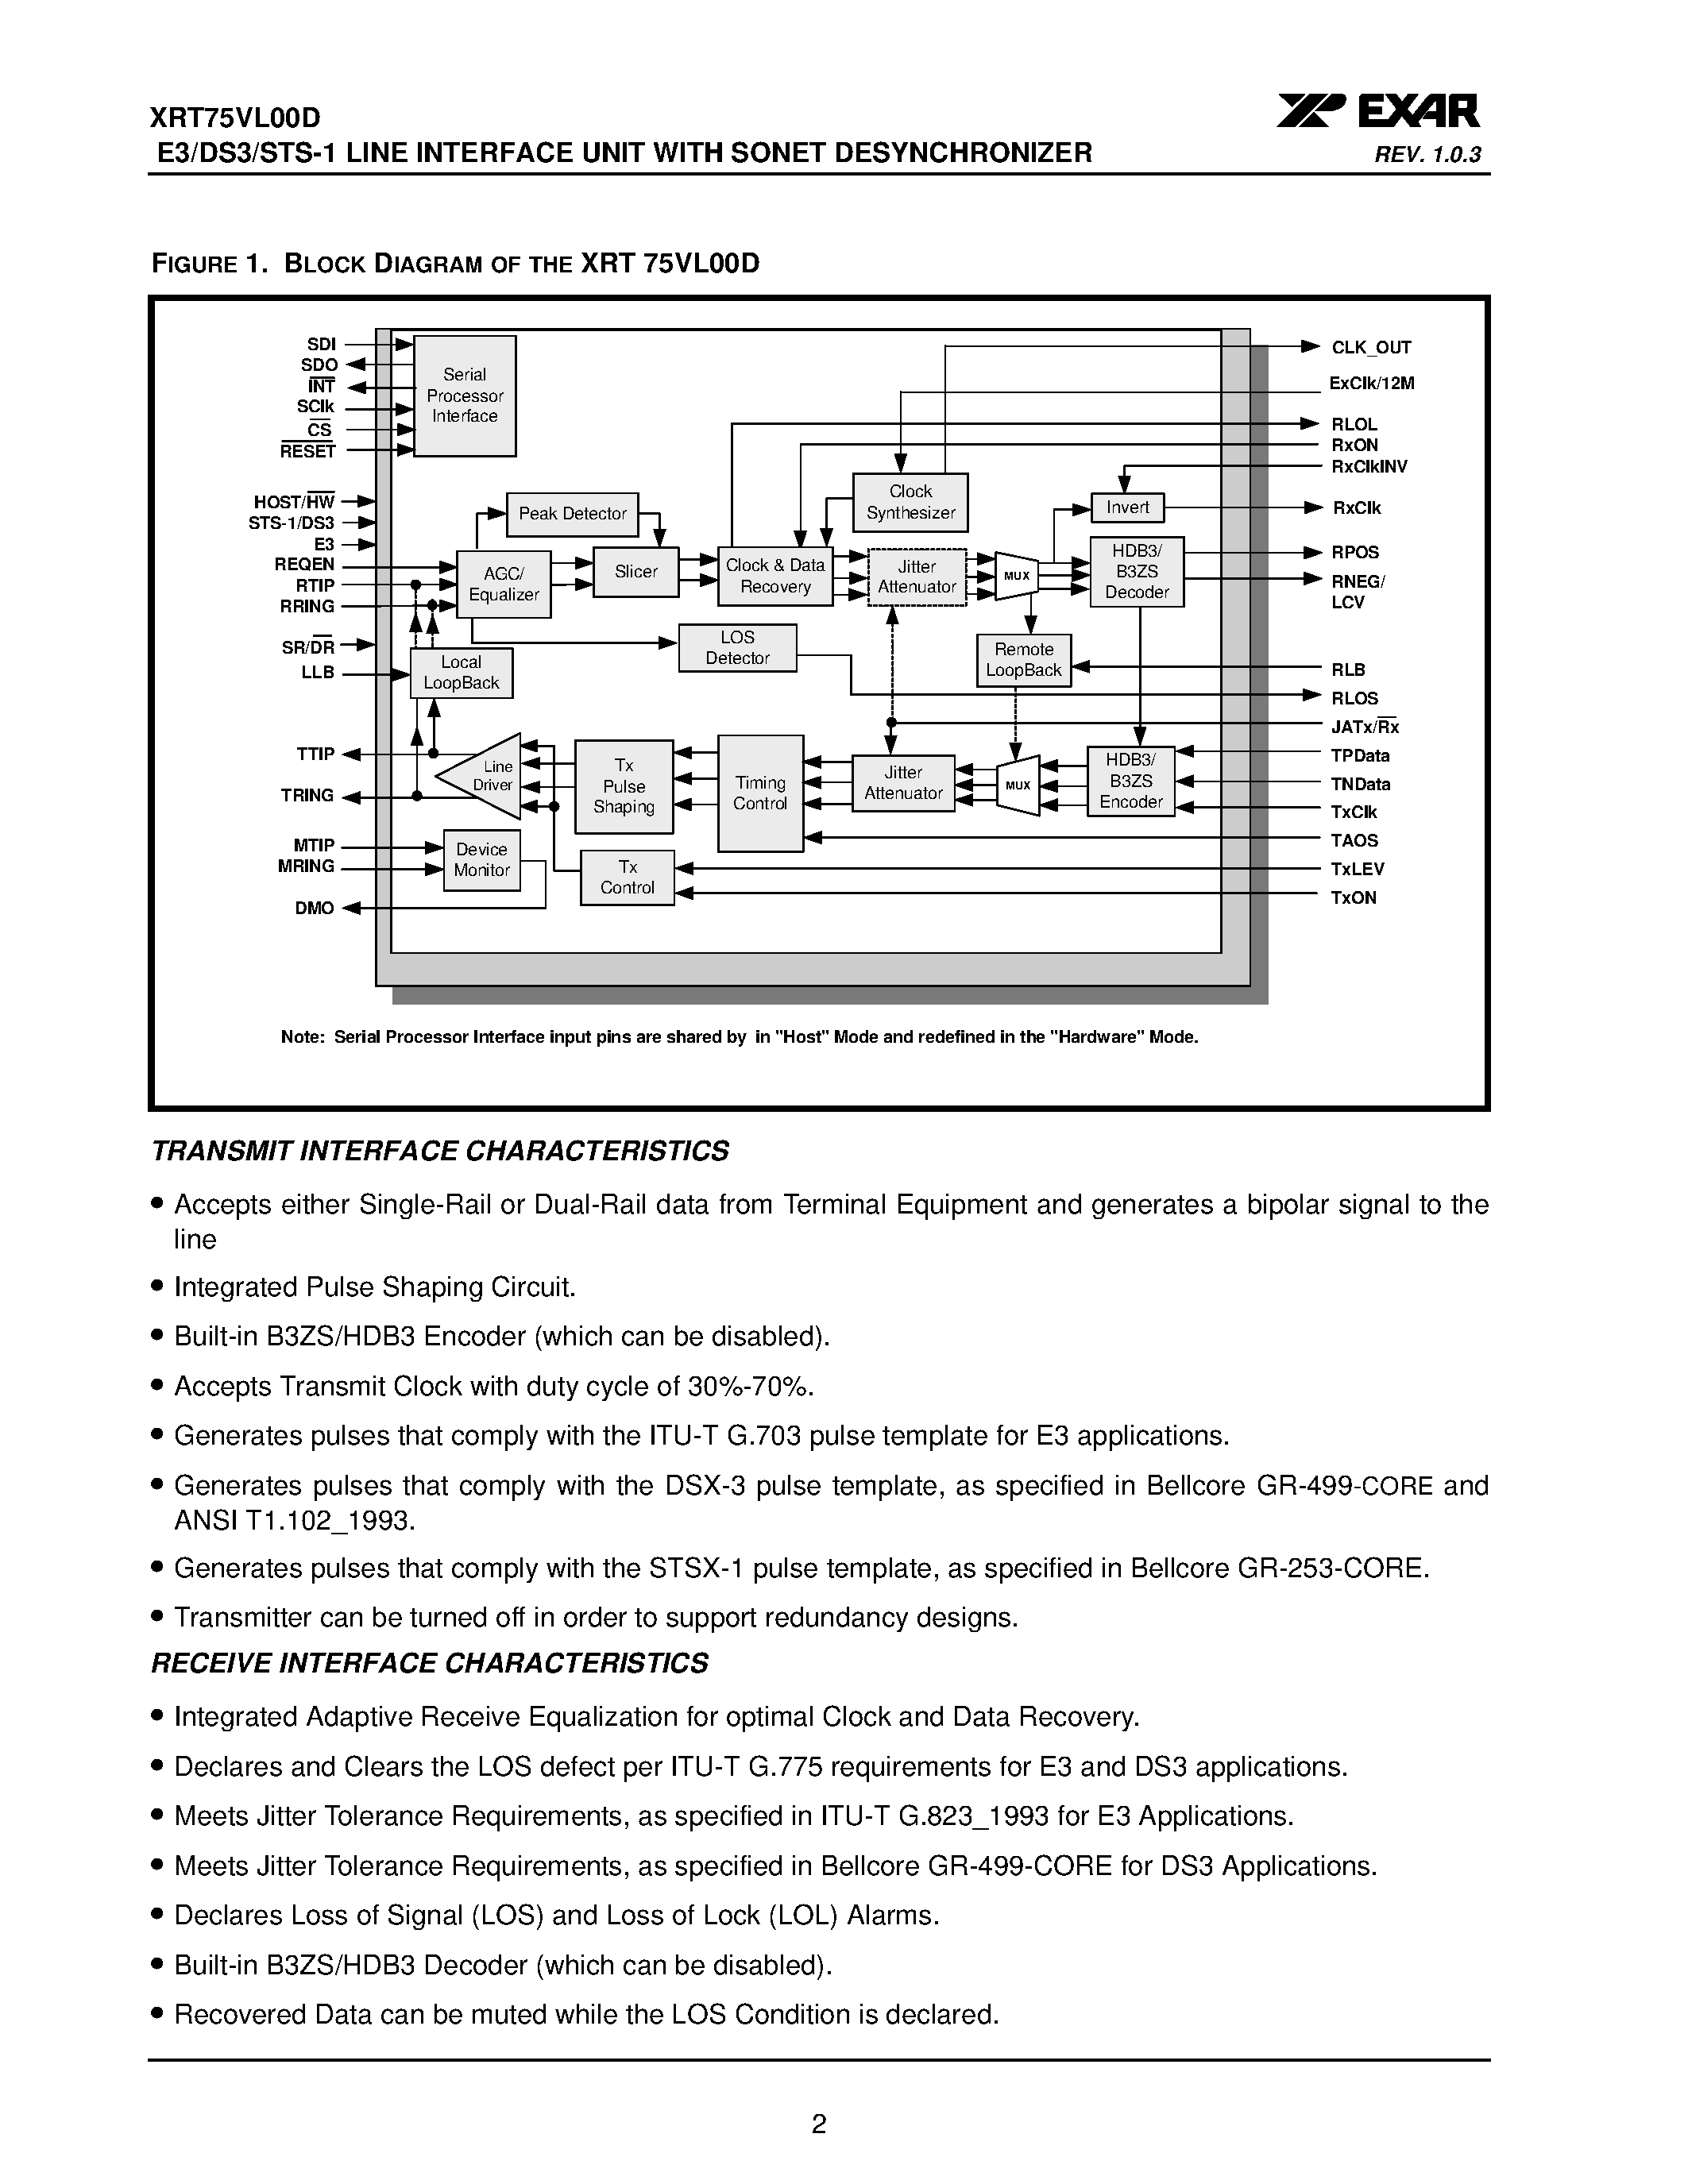 Datasheet XRT75VL00D - E3/DS3/STS-1 LINE INTERFACE UNIT page 2